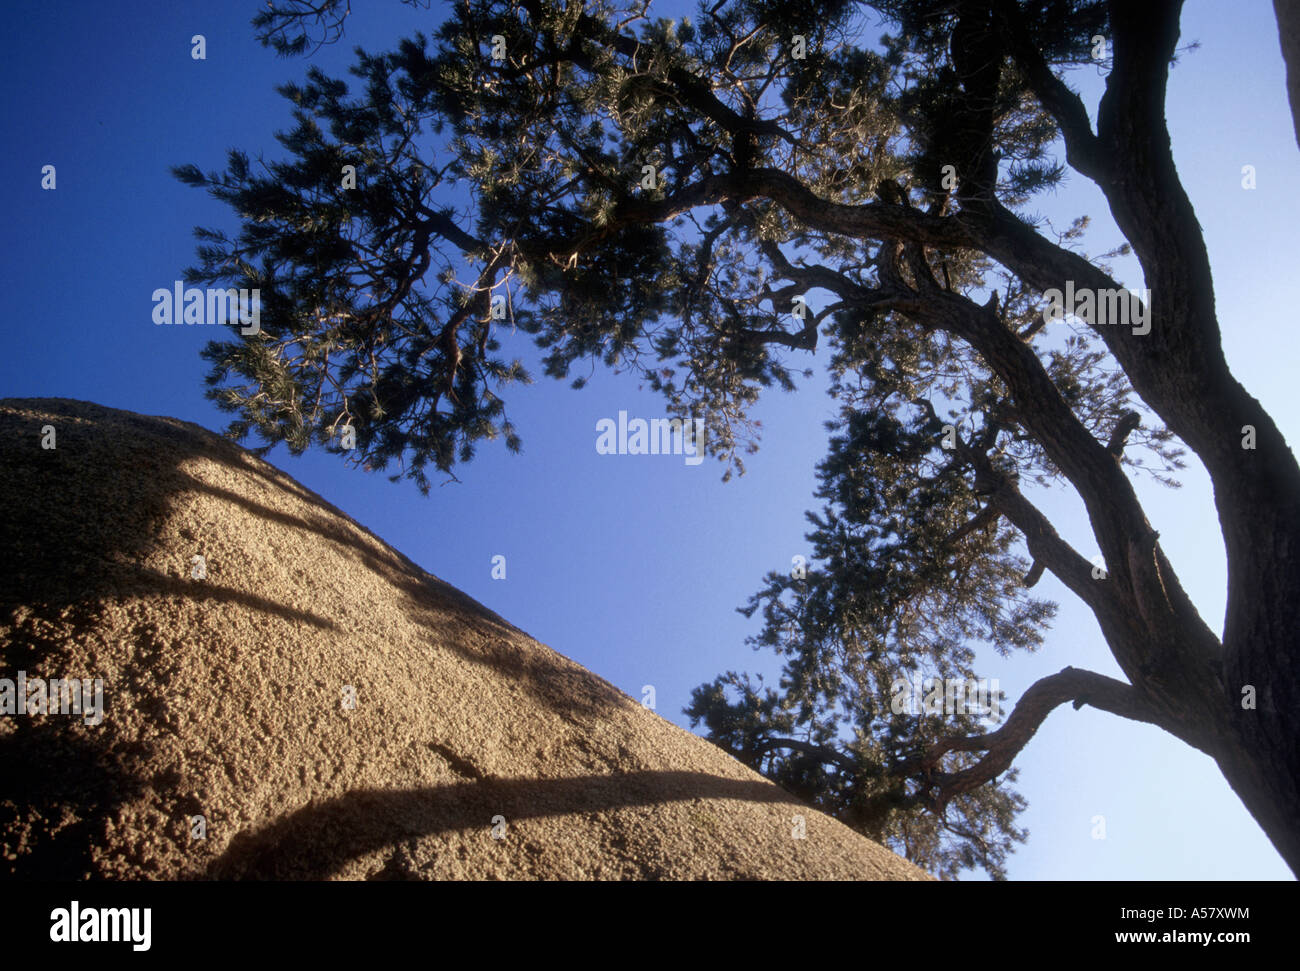 Painet ha2043 4126 Rock formationen Joshua Tree Nationalpark Kalifornien Usa Land entwickeln Nation wirtschaftlich entwickelt Stockfoto